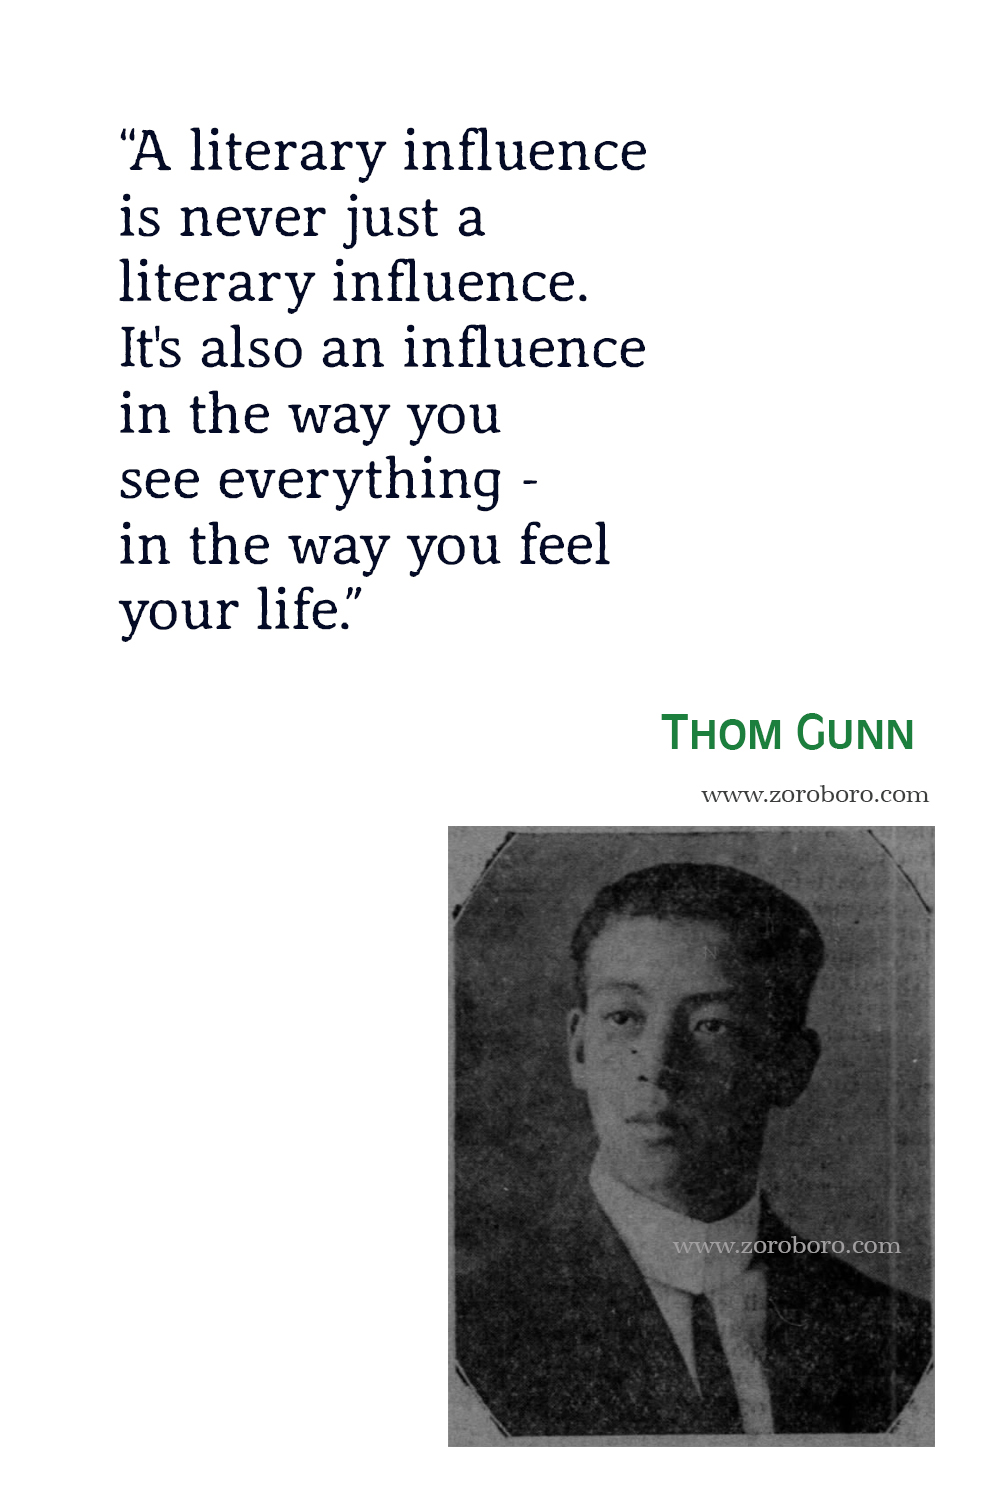 Thom Gunn Quotes, Thom Gunn Poet, Thom Gunn Poetry,Thom Gunn Poems, Thom Gunn Books Quotes, Thom Gunn